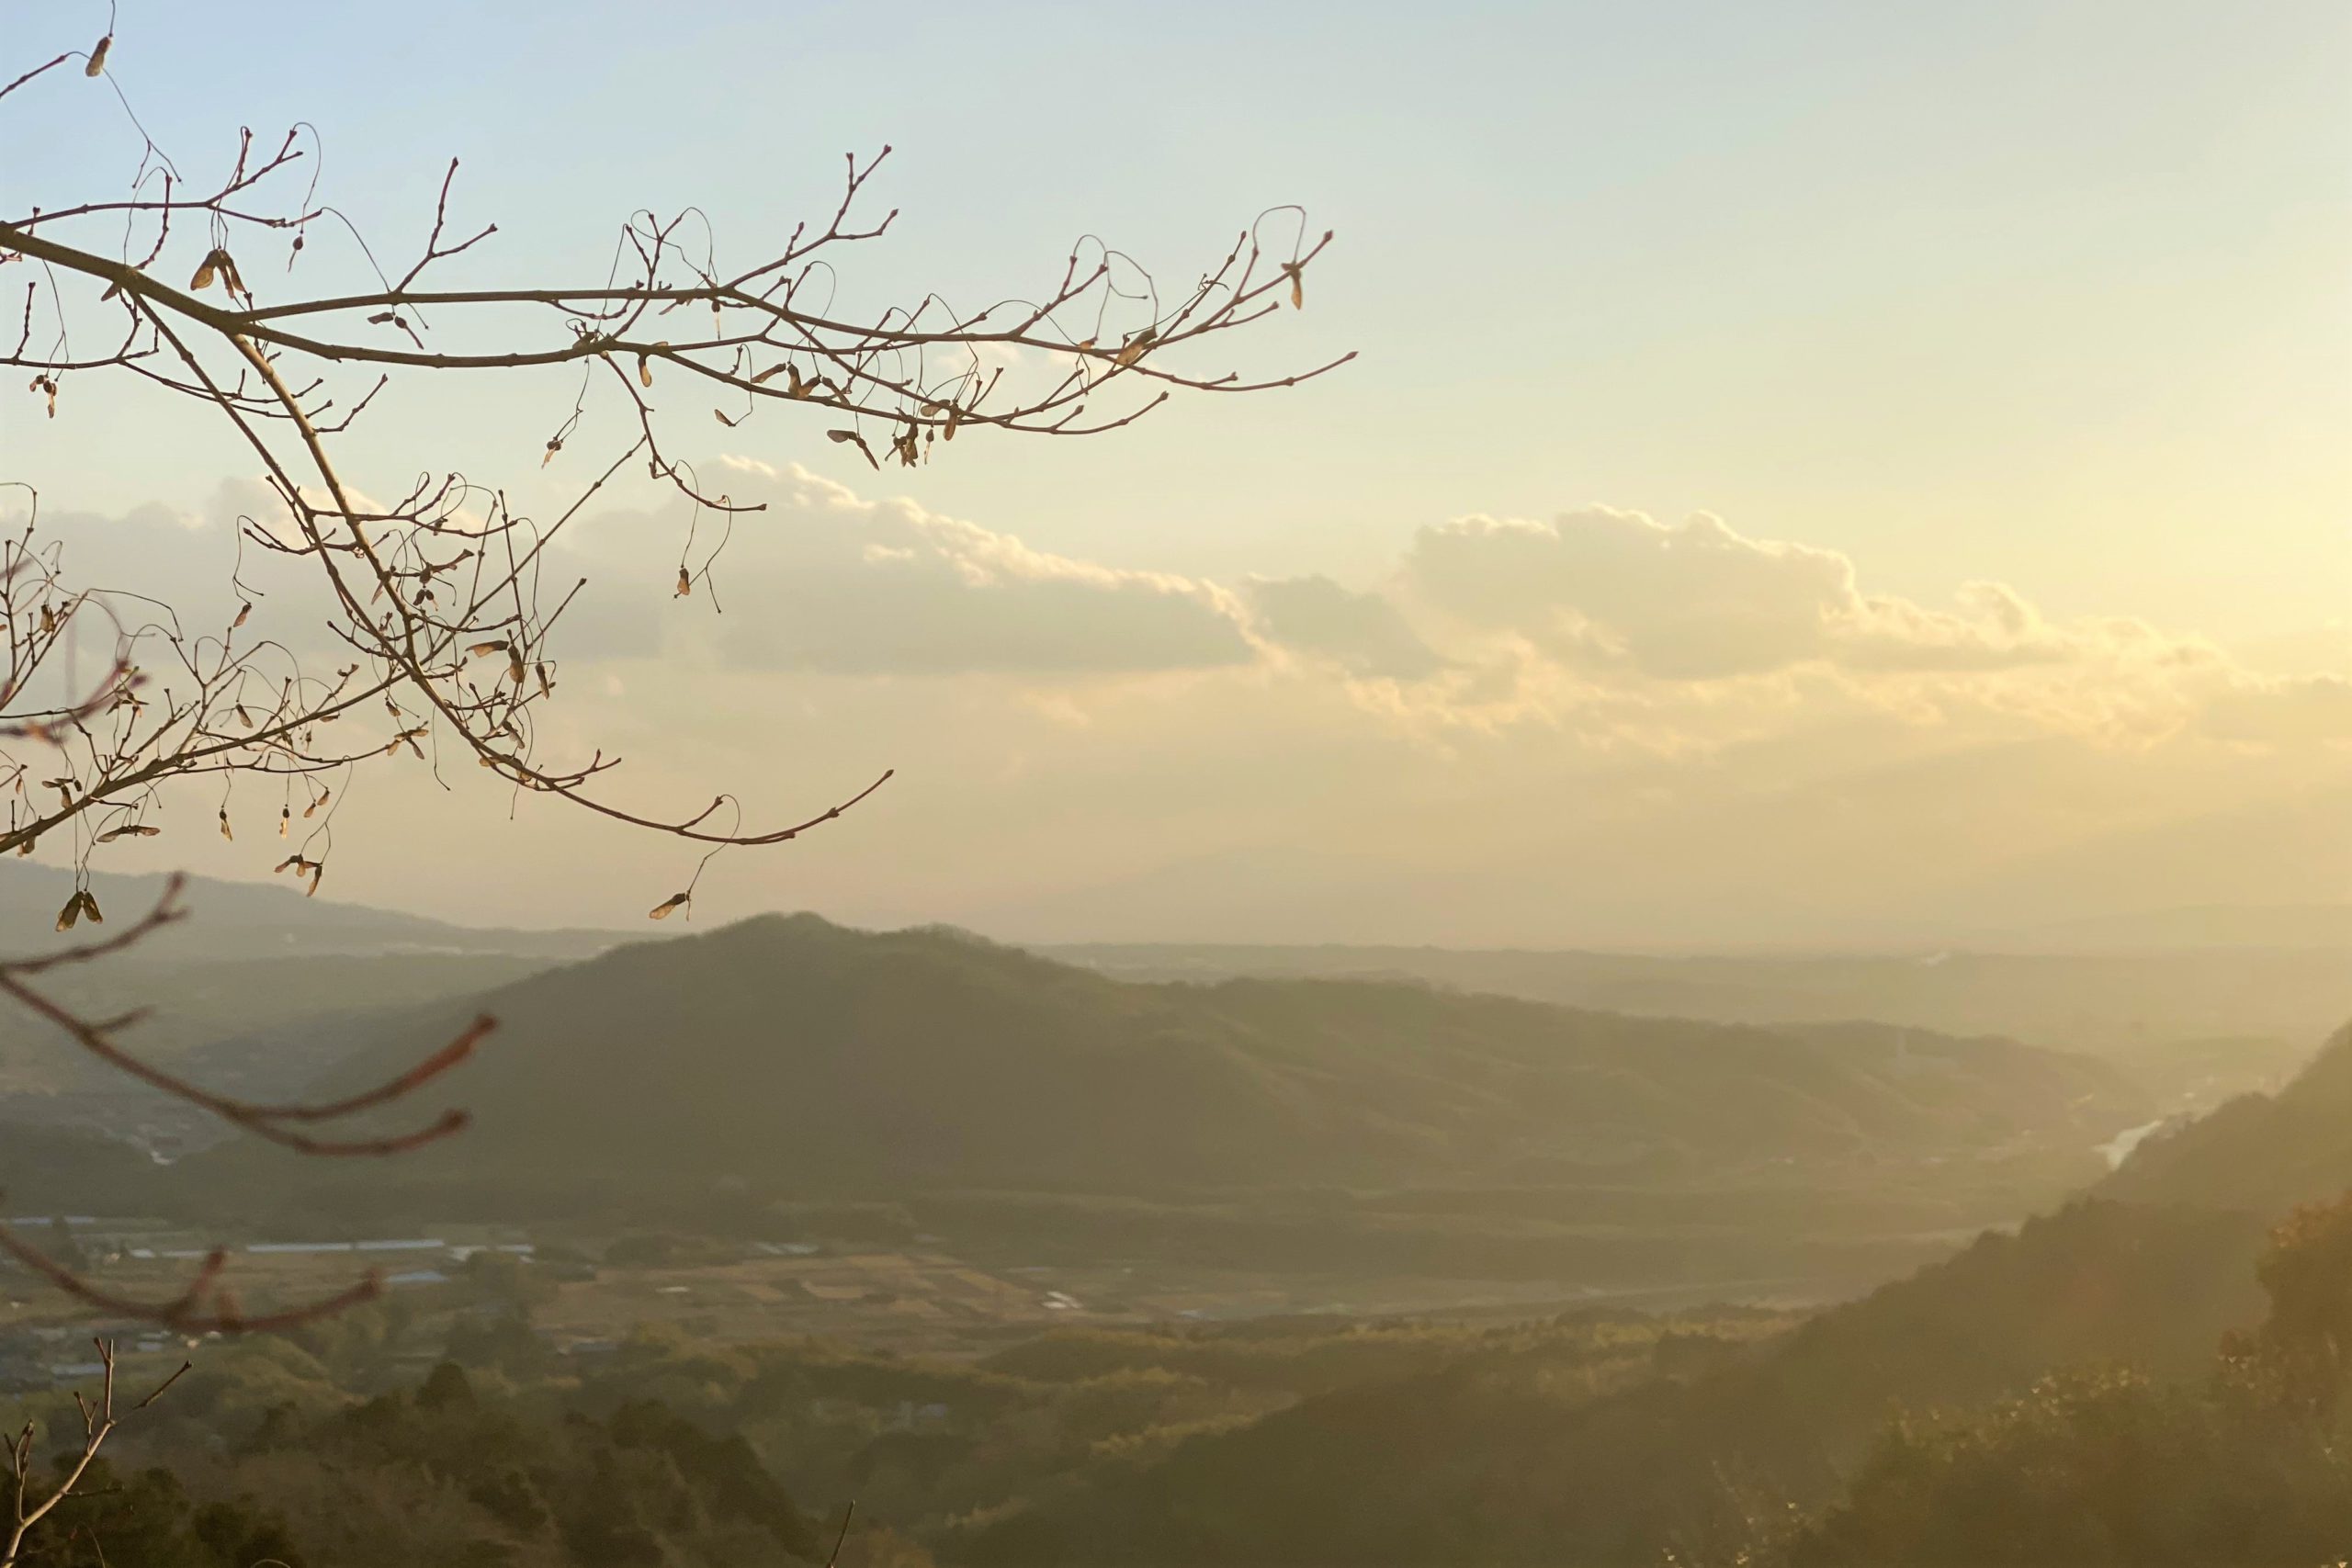 從正殿裏面向外遠眺。木津川對面的延綿山群在冬日陽光的映射下顯得十分清晰。